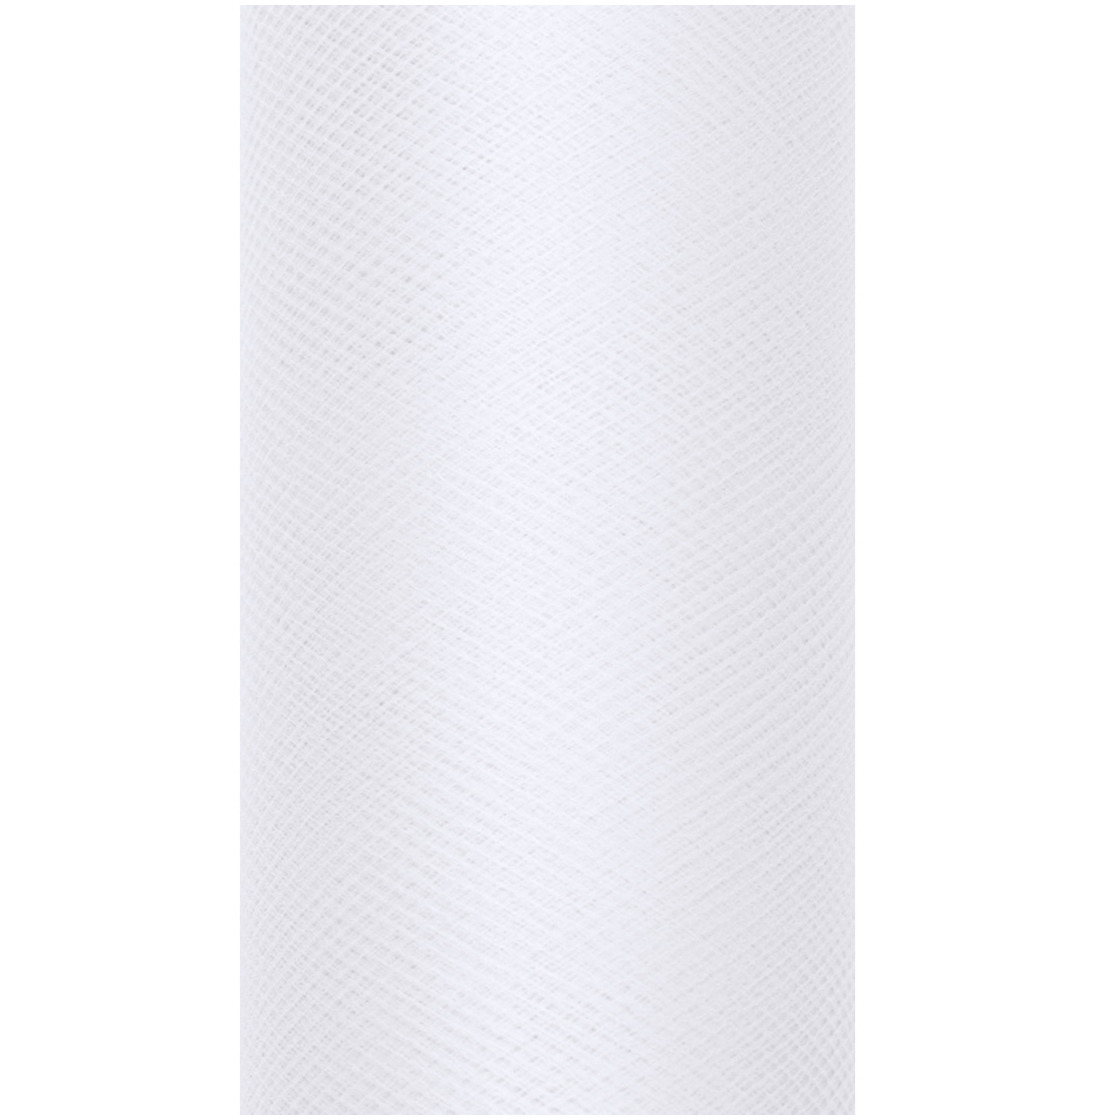 1x Hobby/decoratie witte tule stof op rol 15 cm x 9 meter